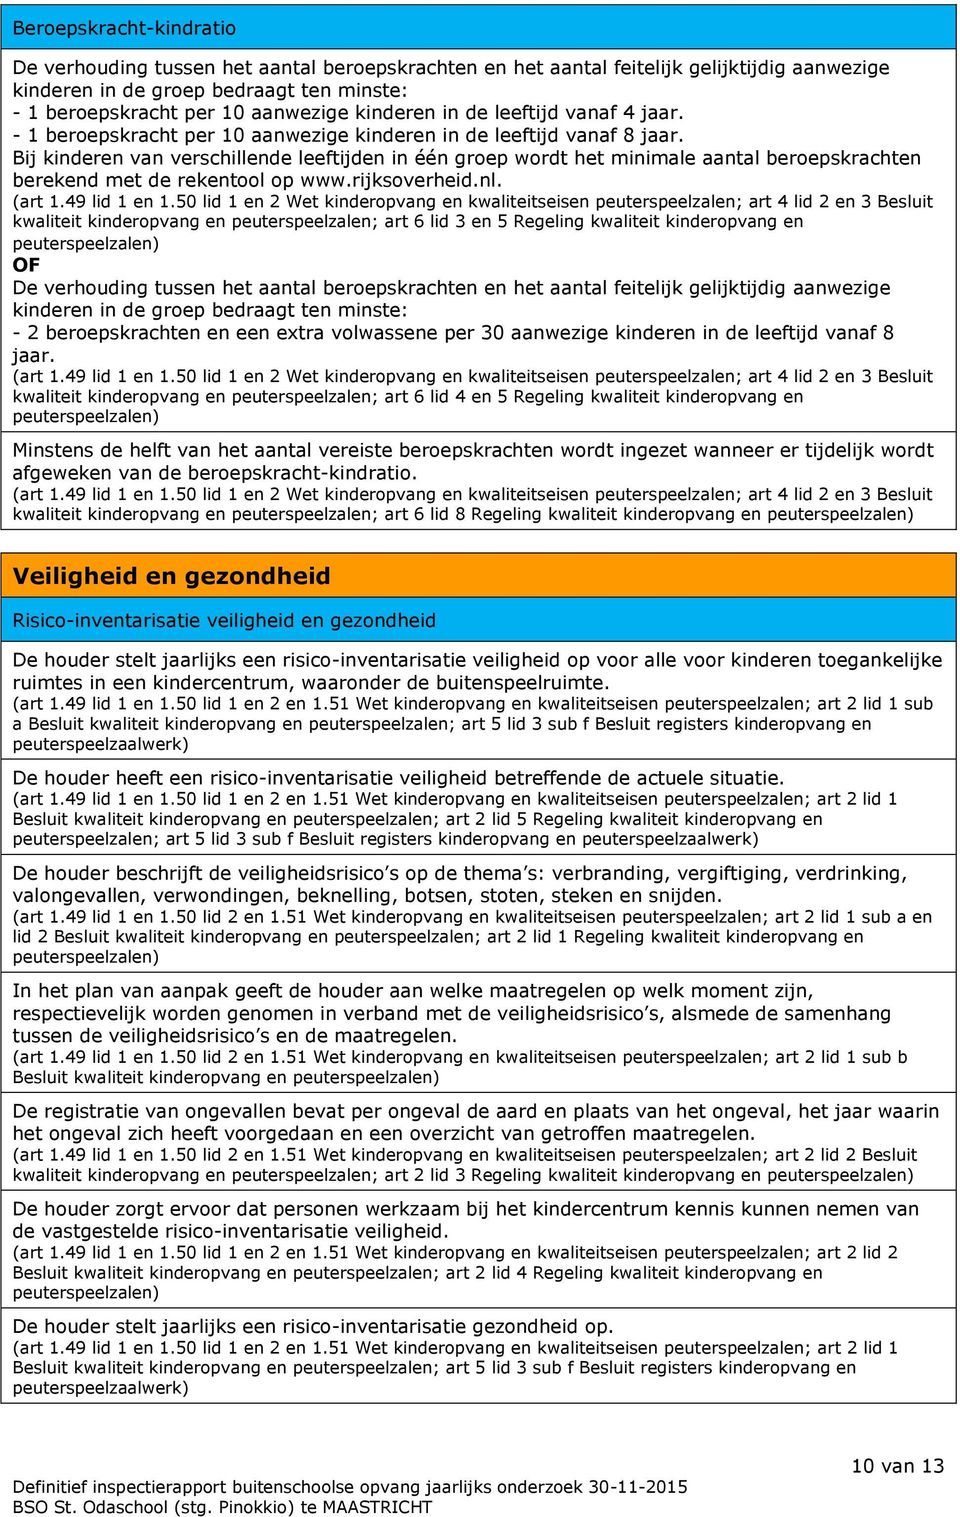 Bij kinderen van verschillende leeftijden in één groep wordt het minimale aantal beroepskrachten berekend met de rekentool op www.rijksoverheid.nl. (art 1.49 lid 1 en 1.